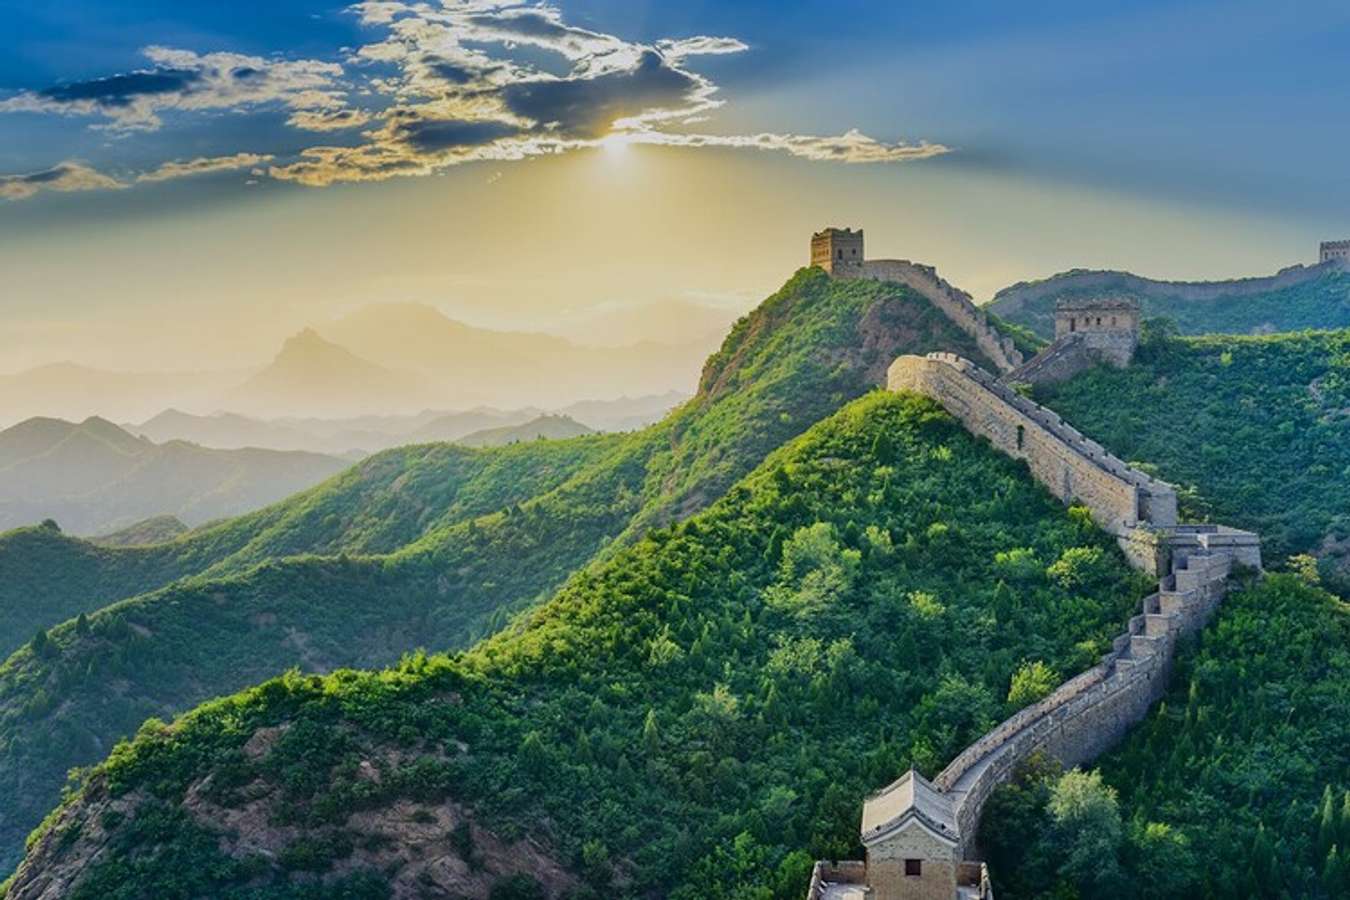 Bạn muốn khám phá Trung Quốc - một đất nước rộng lớn với những bí ẩn và văn hóa độc đáo? Thông qua những hình ảnh đẹp, bạn sẽ được trải nghiệm những điểm đến nổi tiếng của Trung Quốc như Bảo Tàng Quốc Gia, Cầu Vàng, Động Long Khánh hay Thành Đô. Hãy sẵn sàng cho một chuyến đi thú vị đến Trung Quốc.